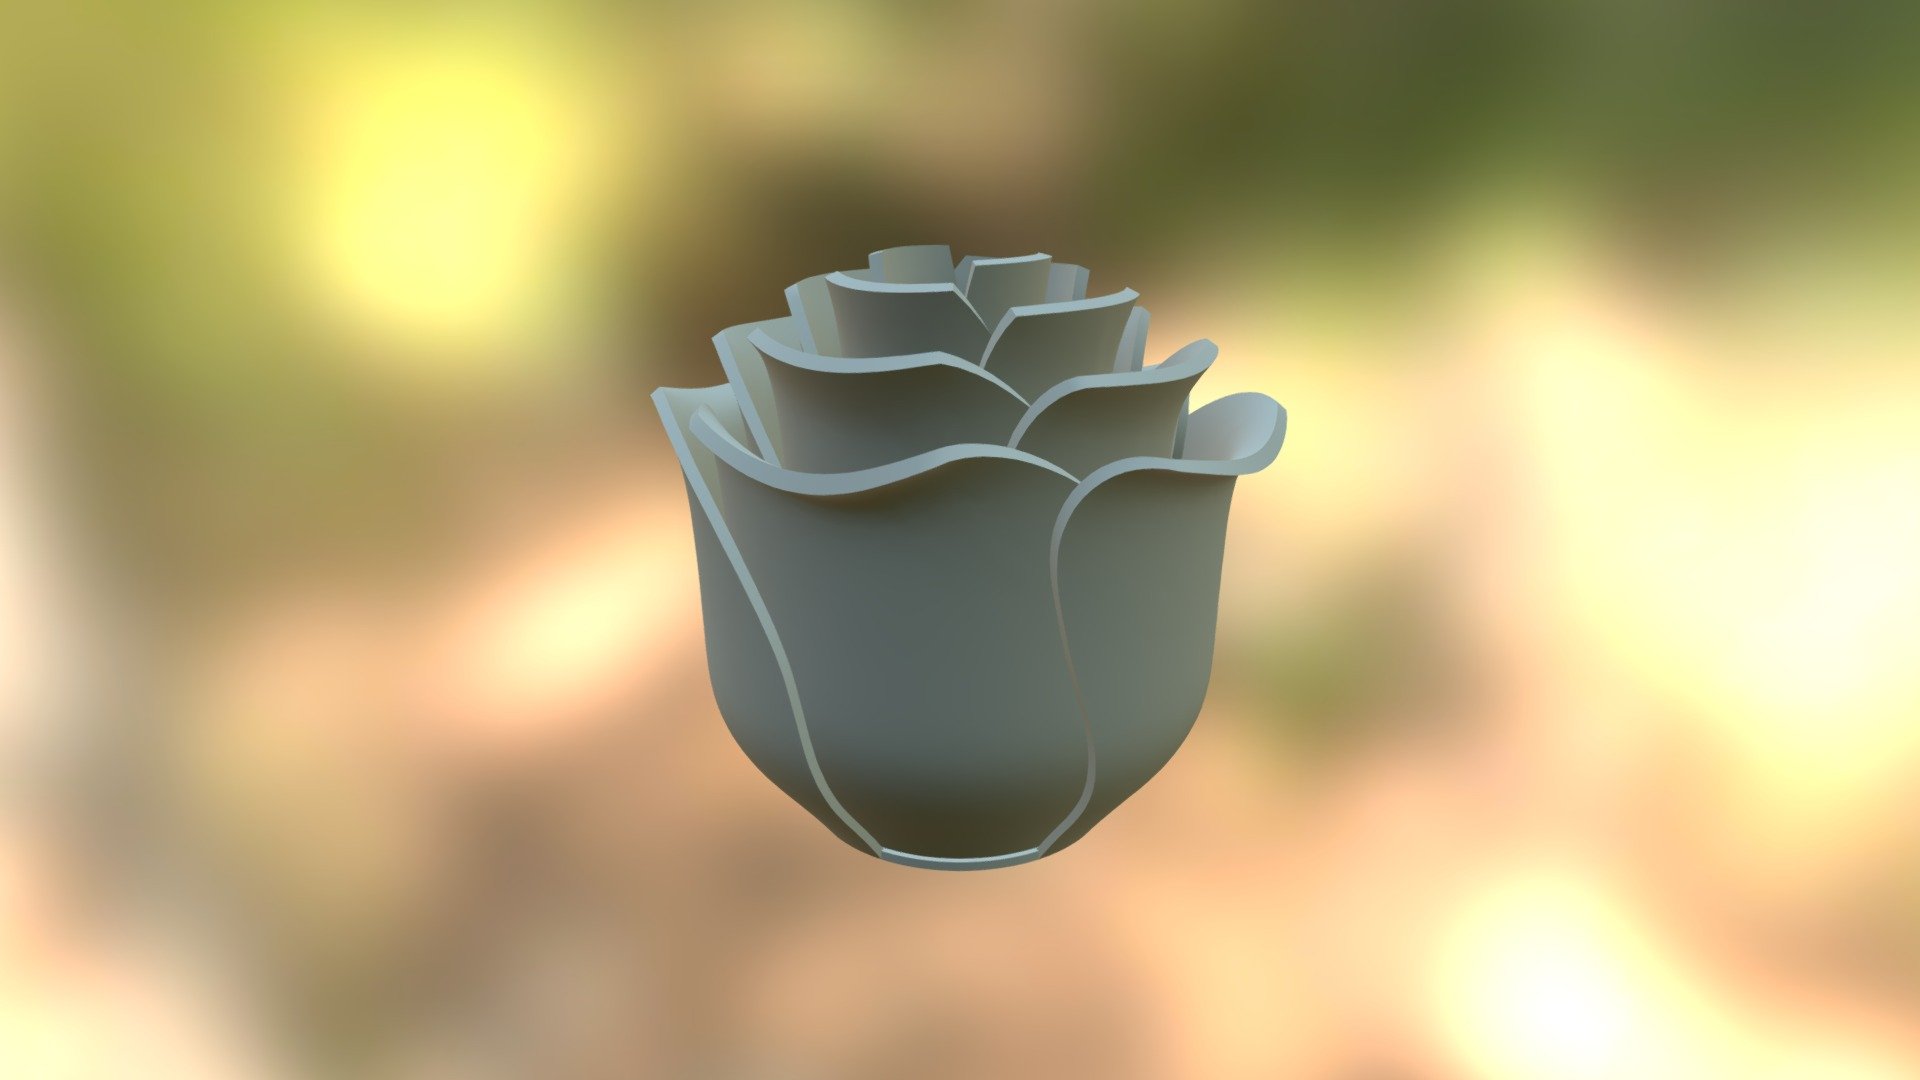 Roses - 3D model by FacFox (@michaeledi) 3d model